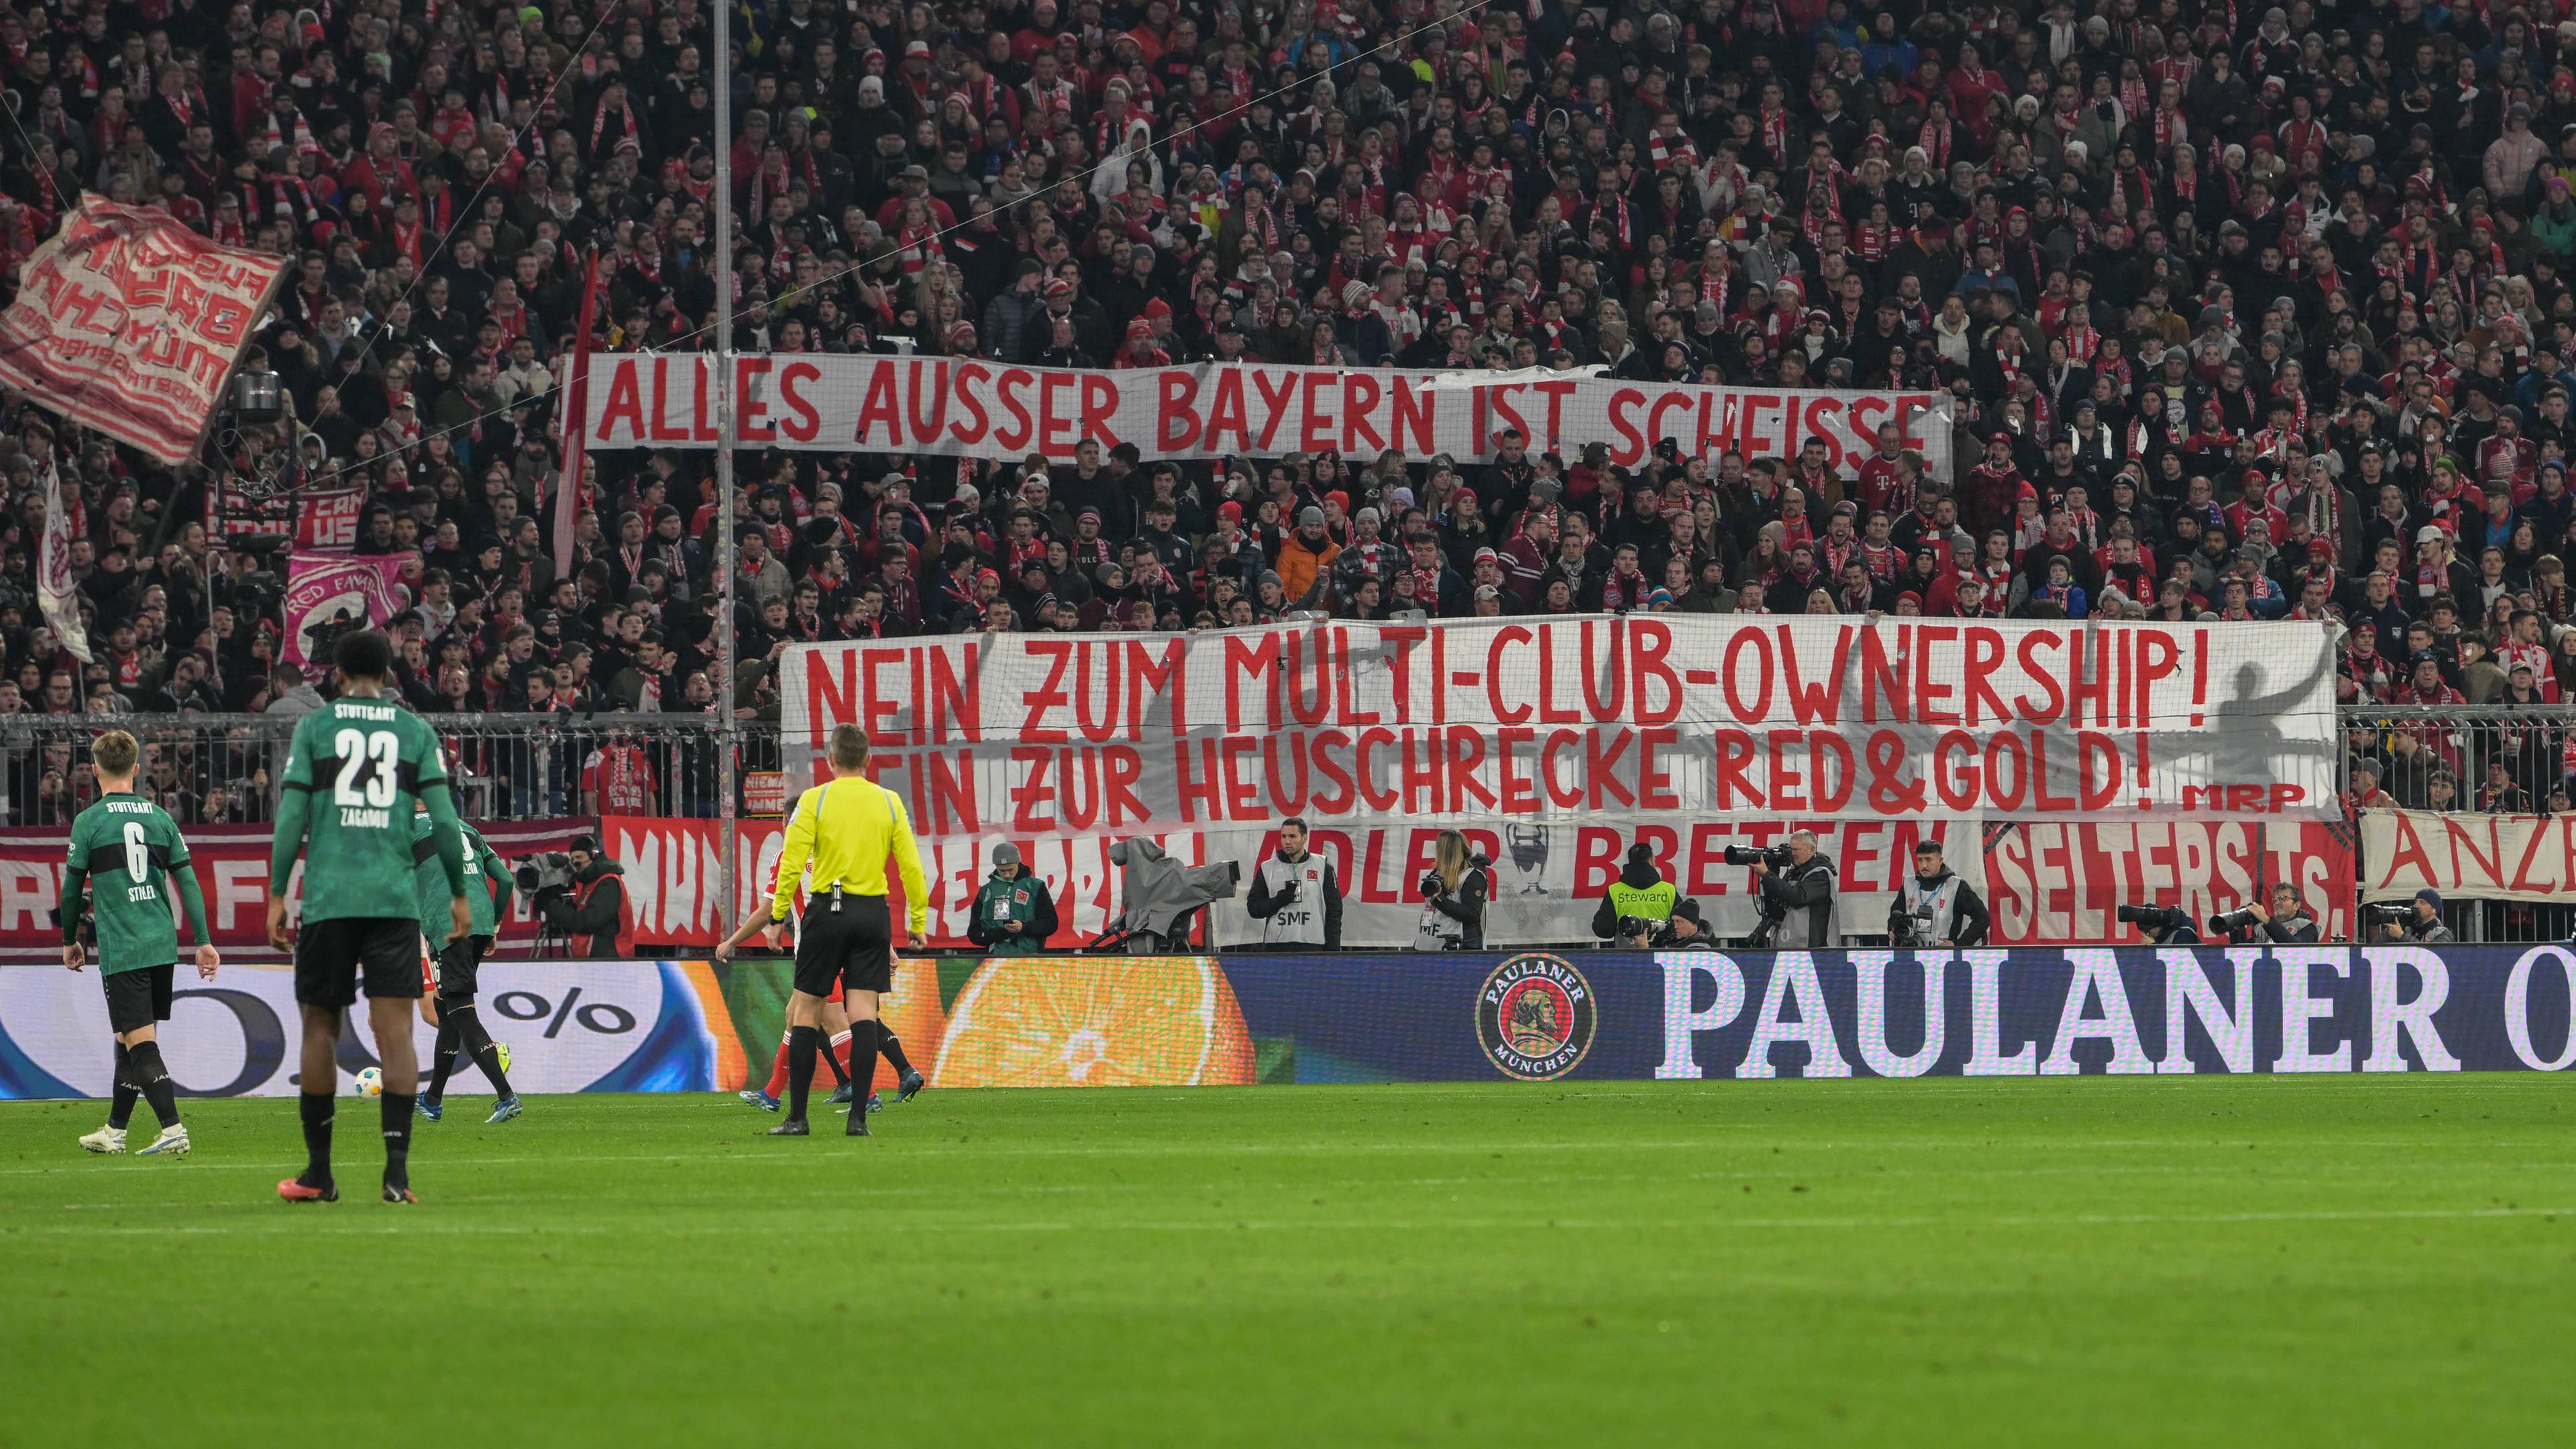 Spruchband gegen das Projekt "Red&Gold" des FC Bayern